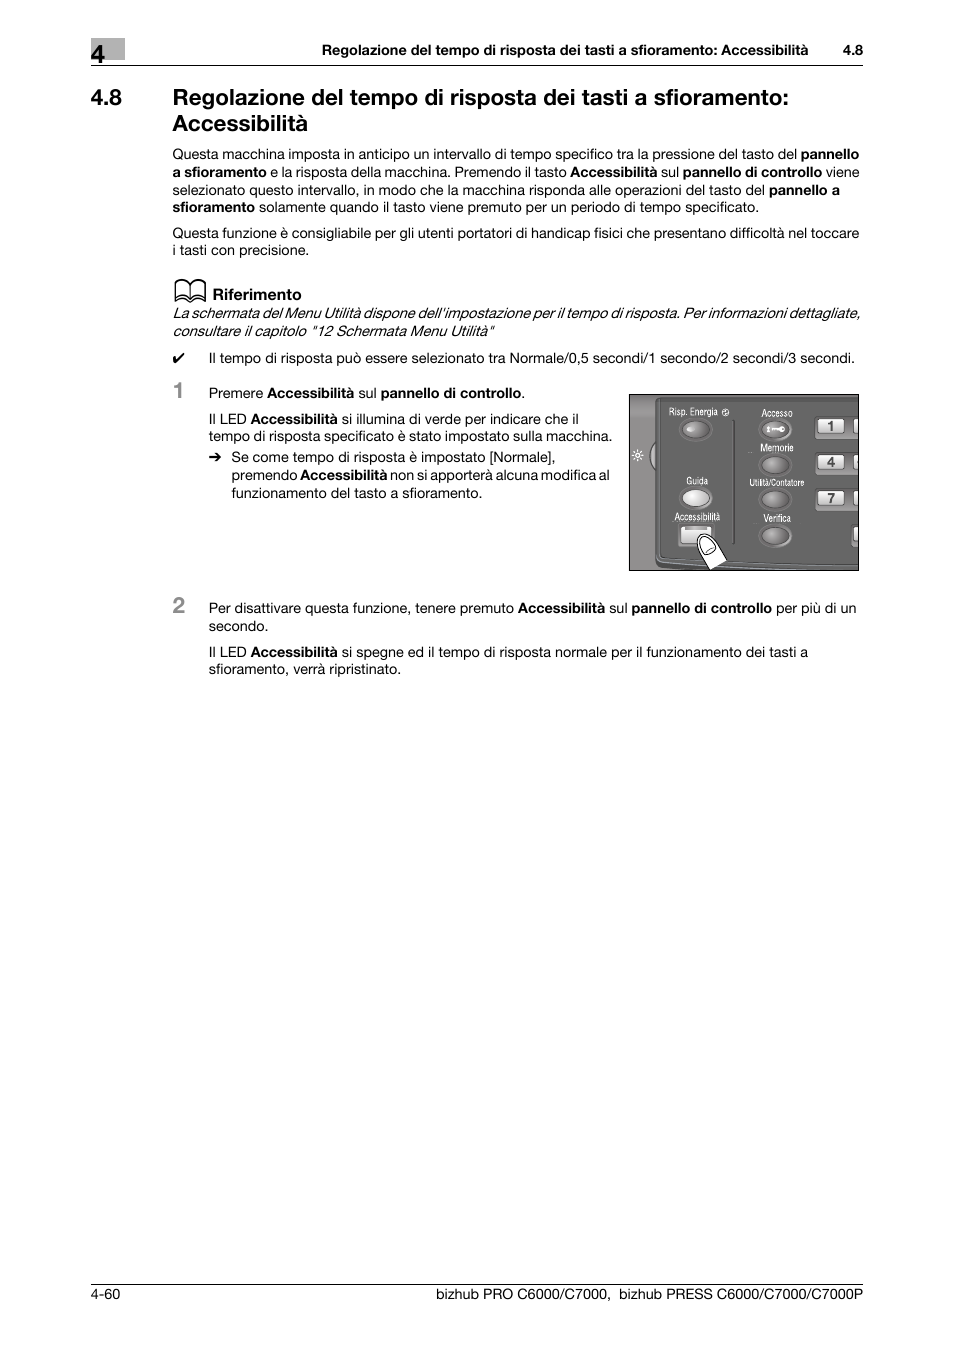 Konica Minolta bizhub PRESS C7000P Manuale d'uso | Pagina 116 / 624